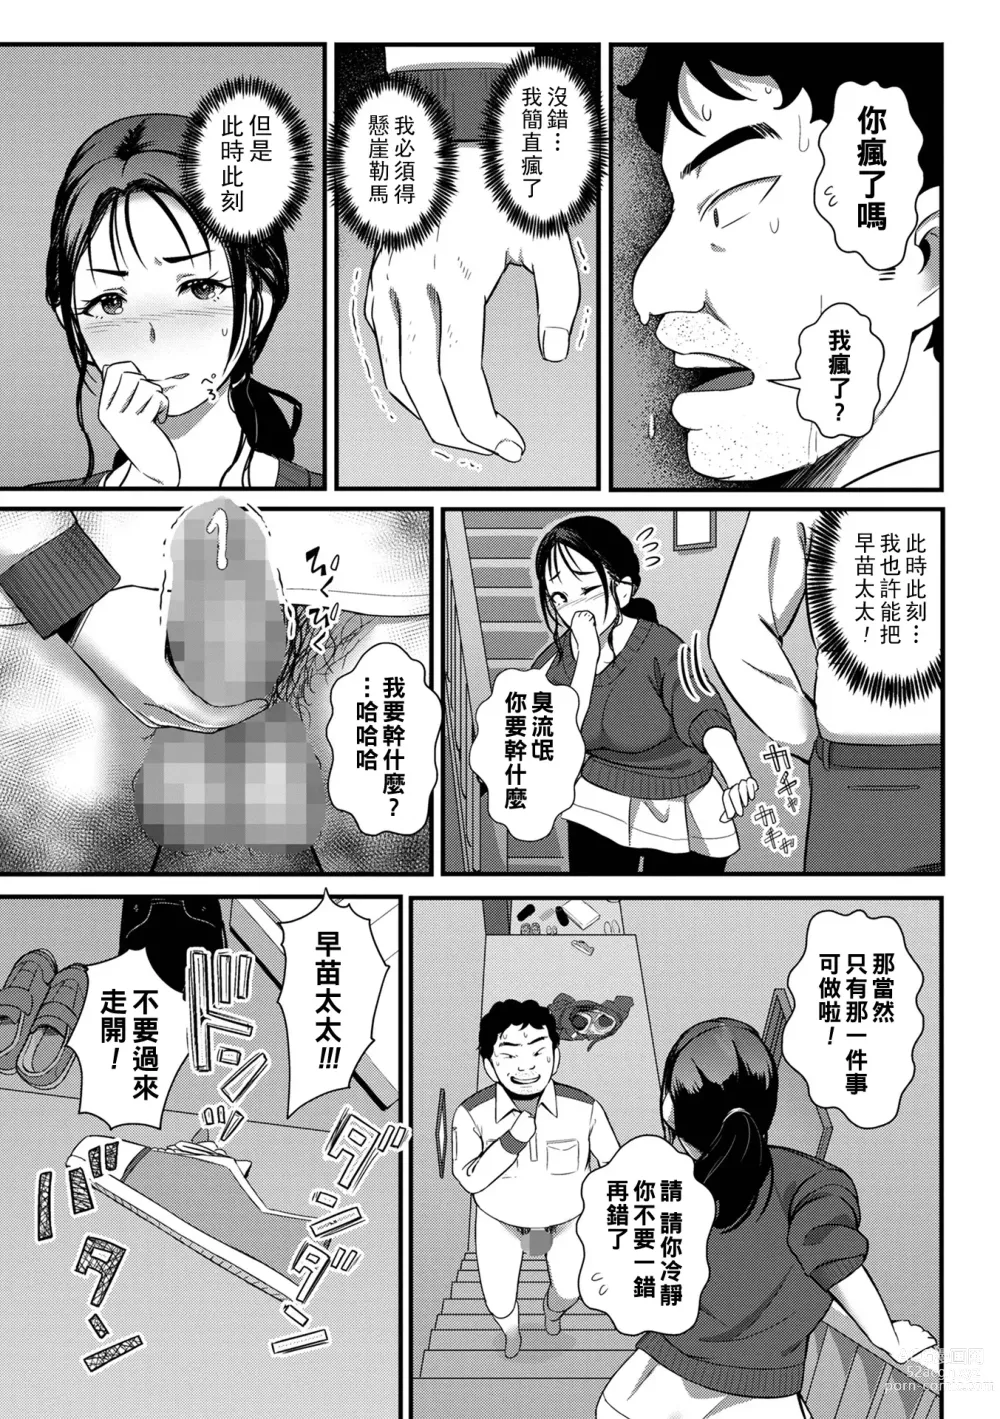 Page 5 of manga Datenshi